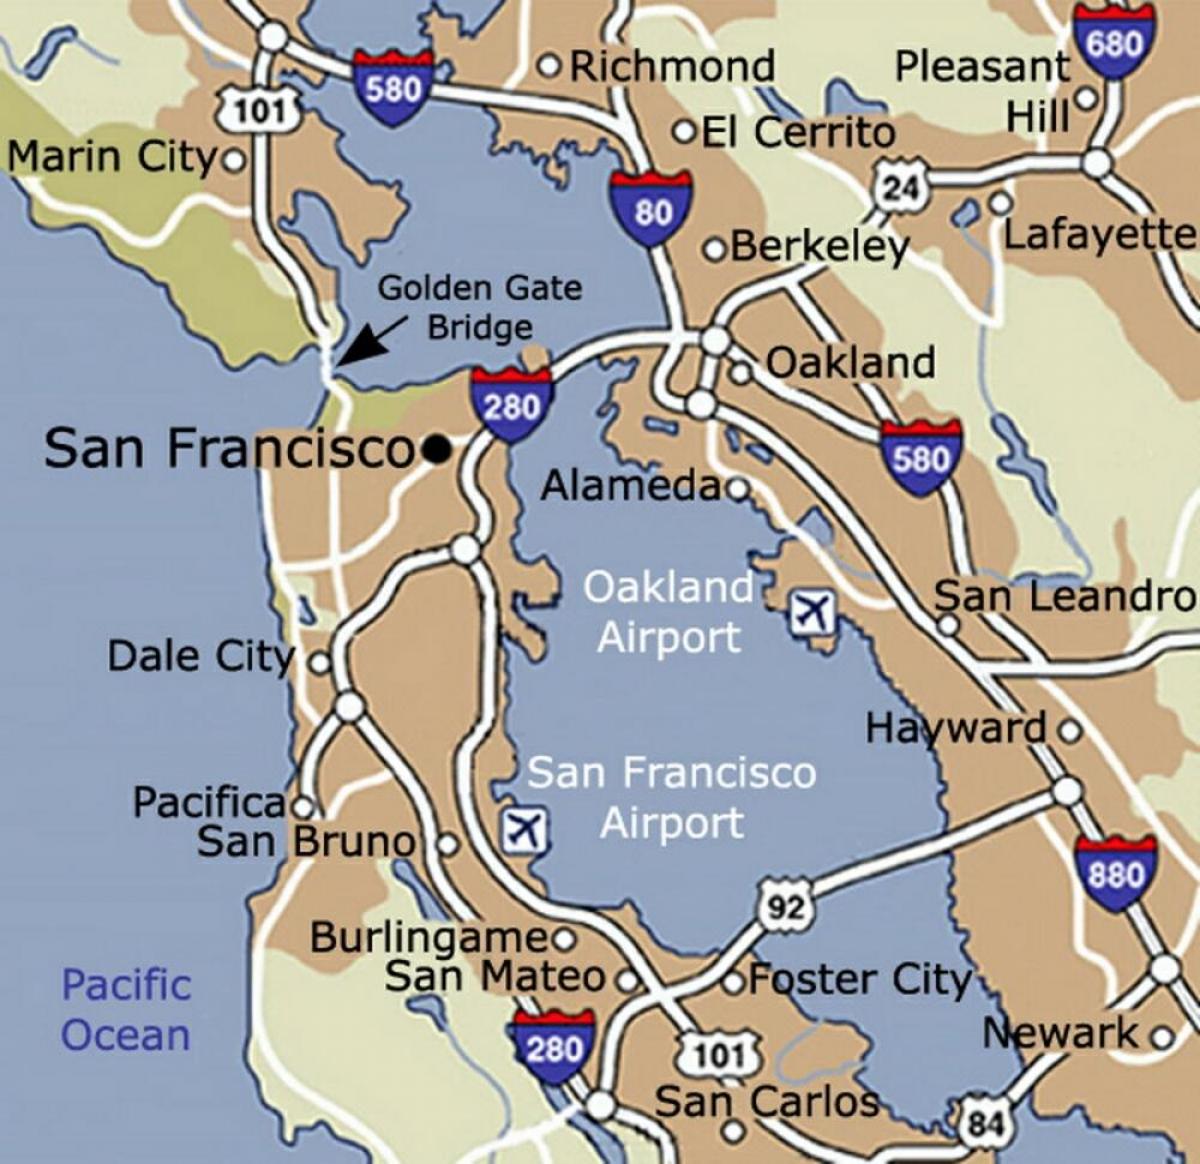 Mappa dell'aeroporto di San Francisco e dintorni